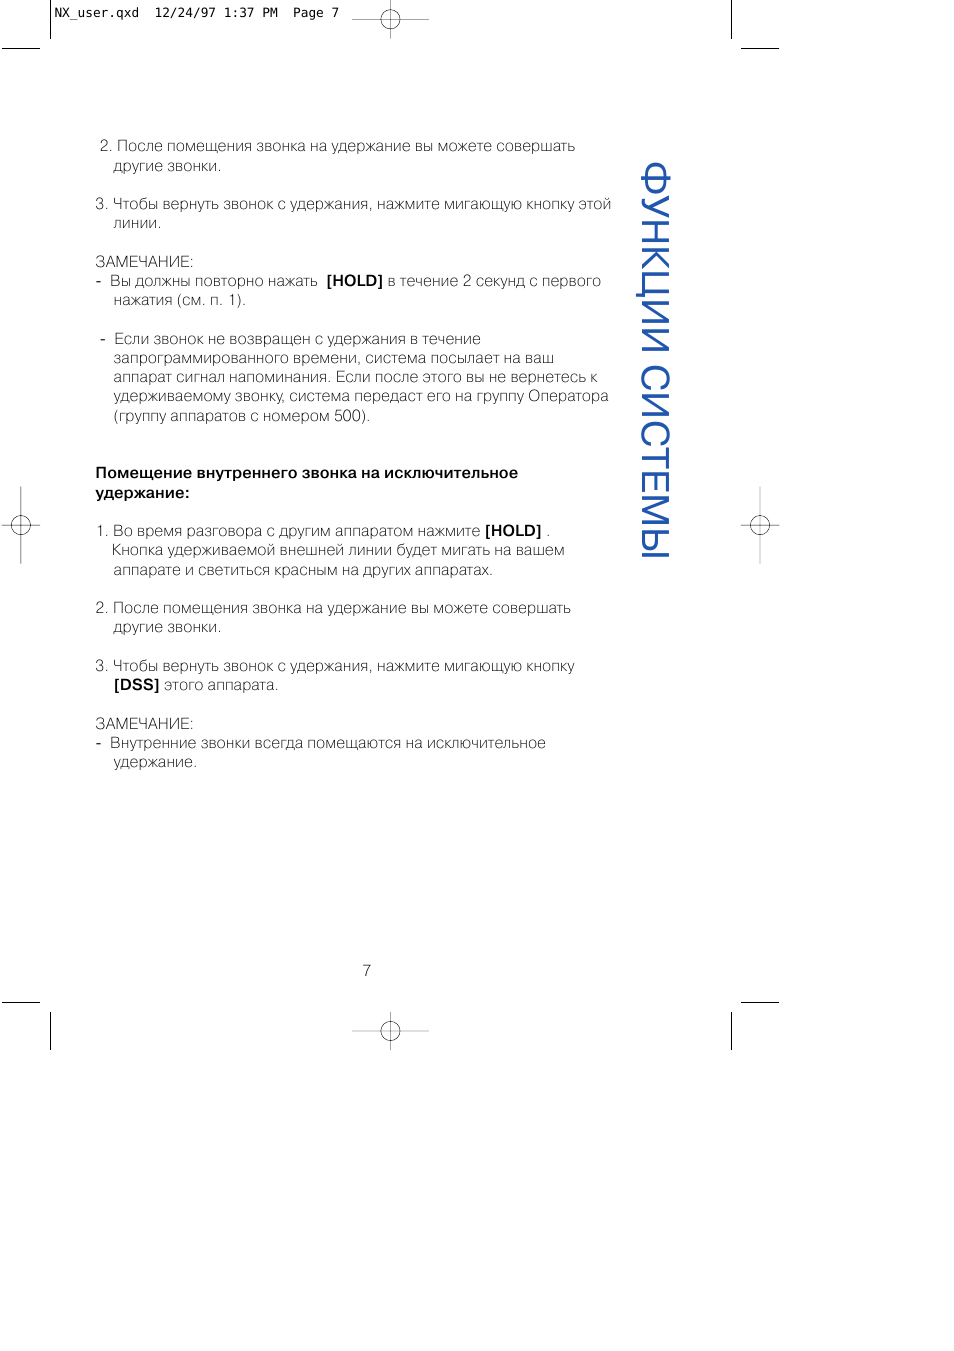 Функции системы | Инструкция по эксплуатации Samsung NX-820 | Страница 7 / 14